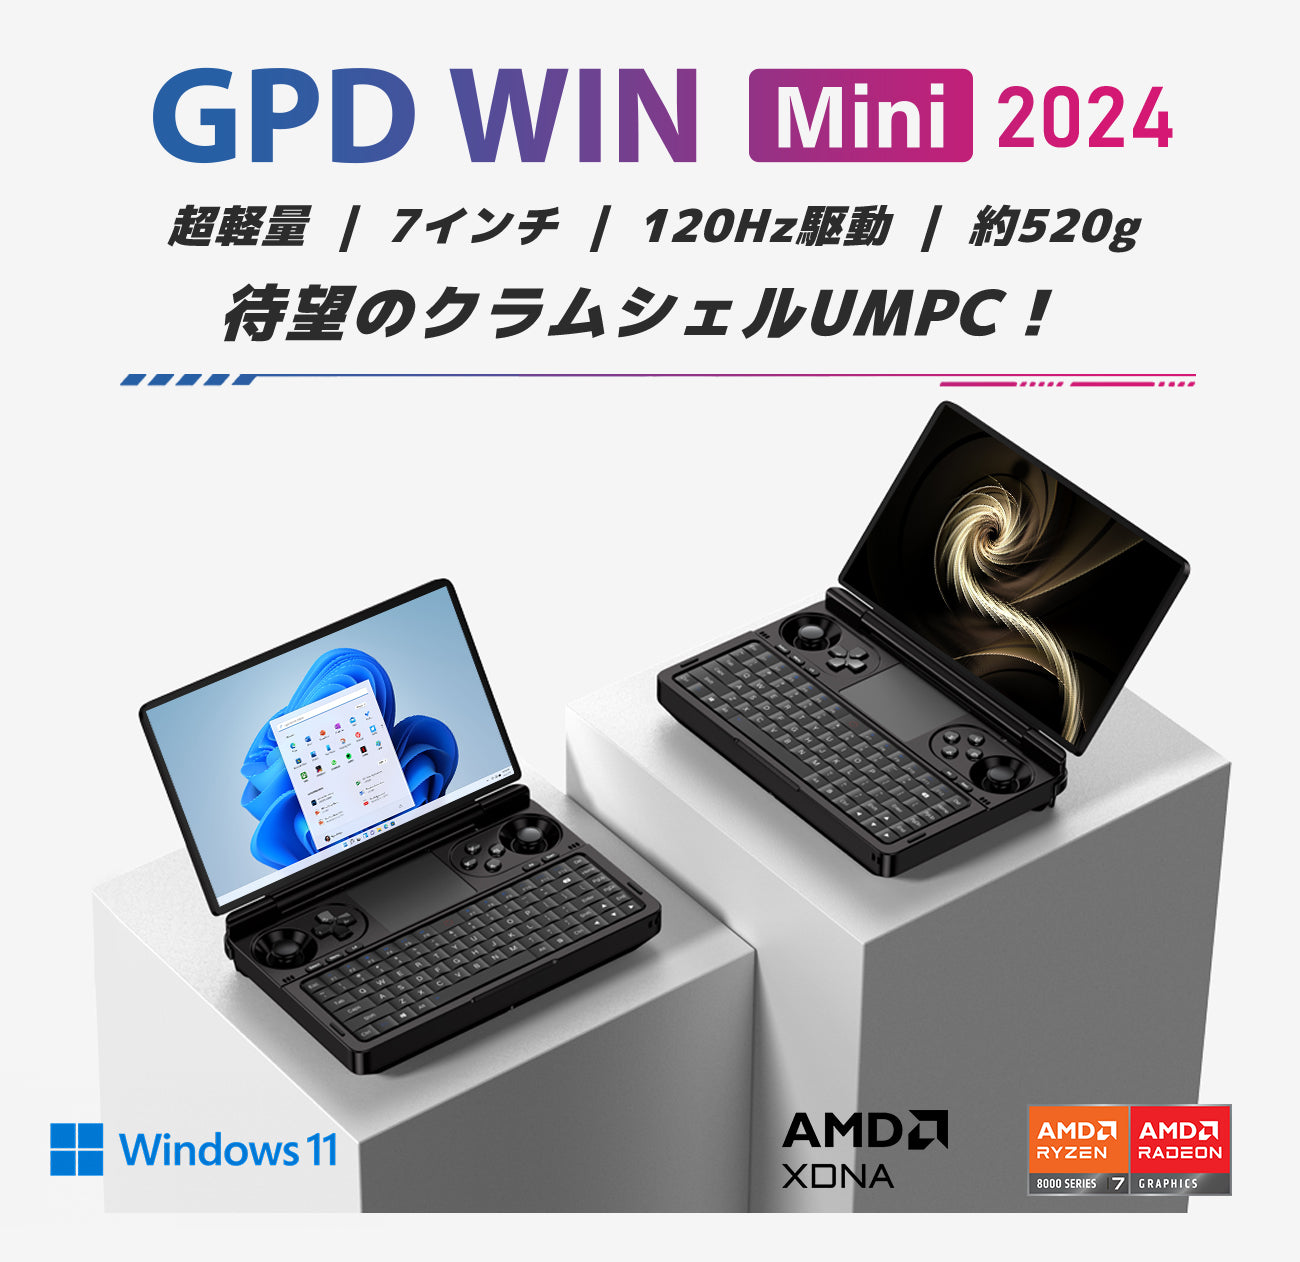 GPD WIN Mini 2024 – GPDダイレクト